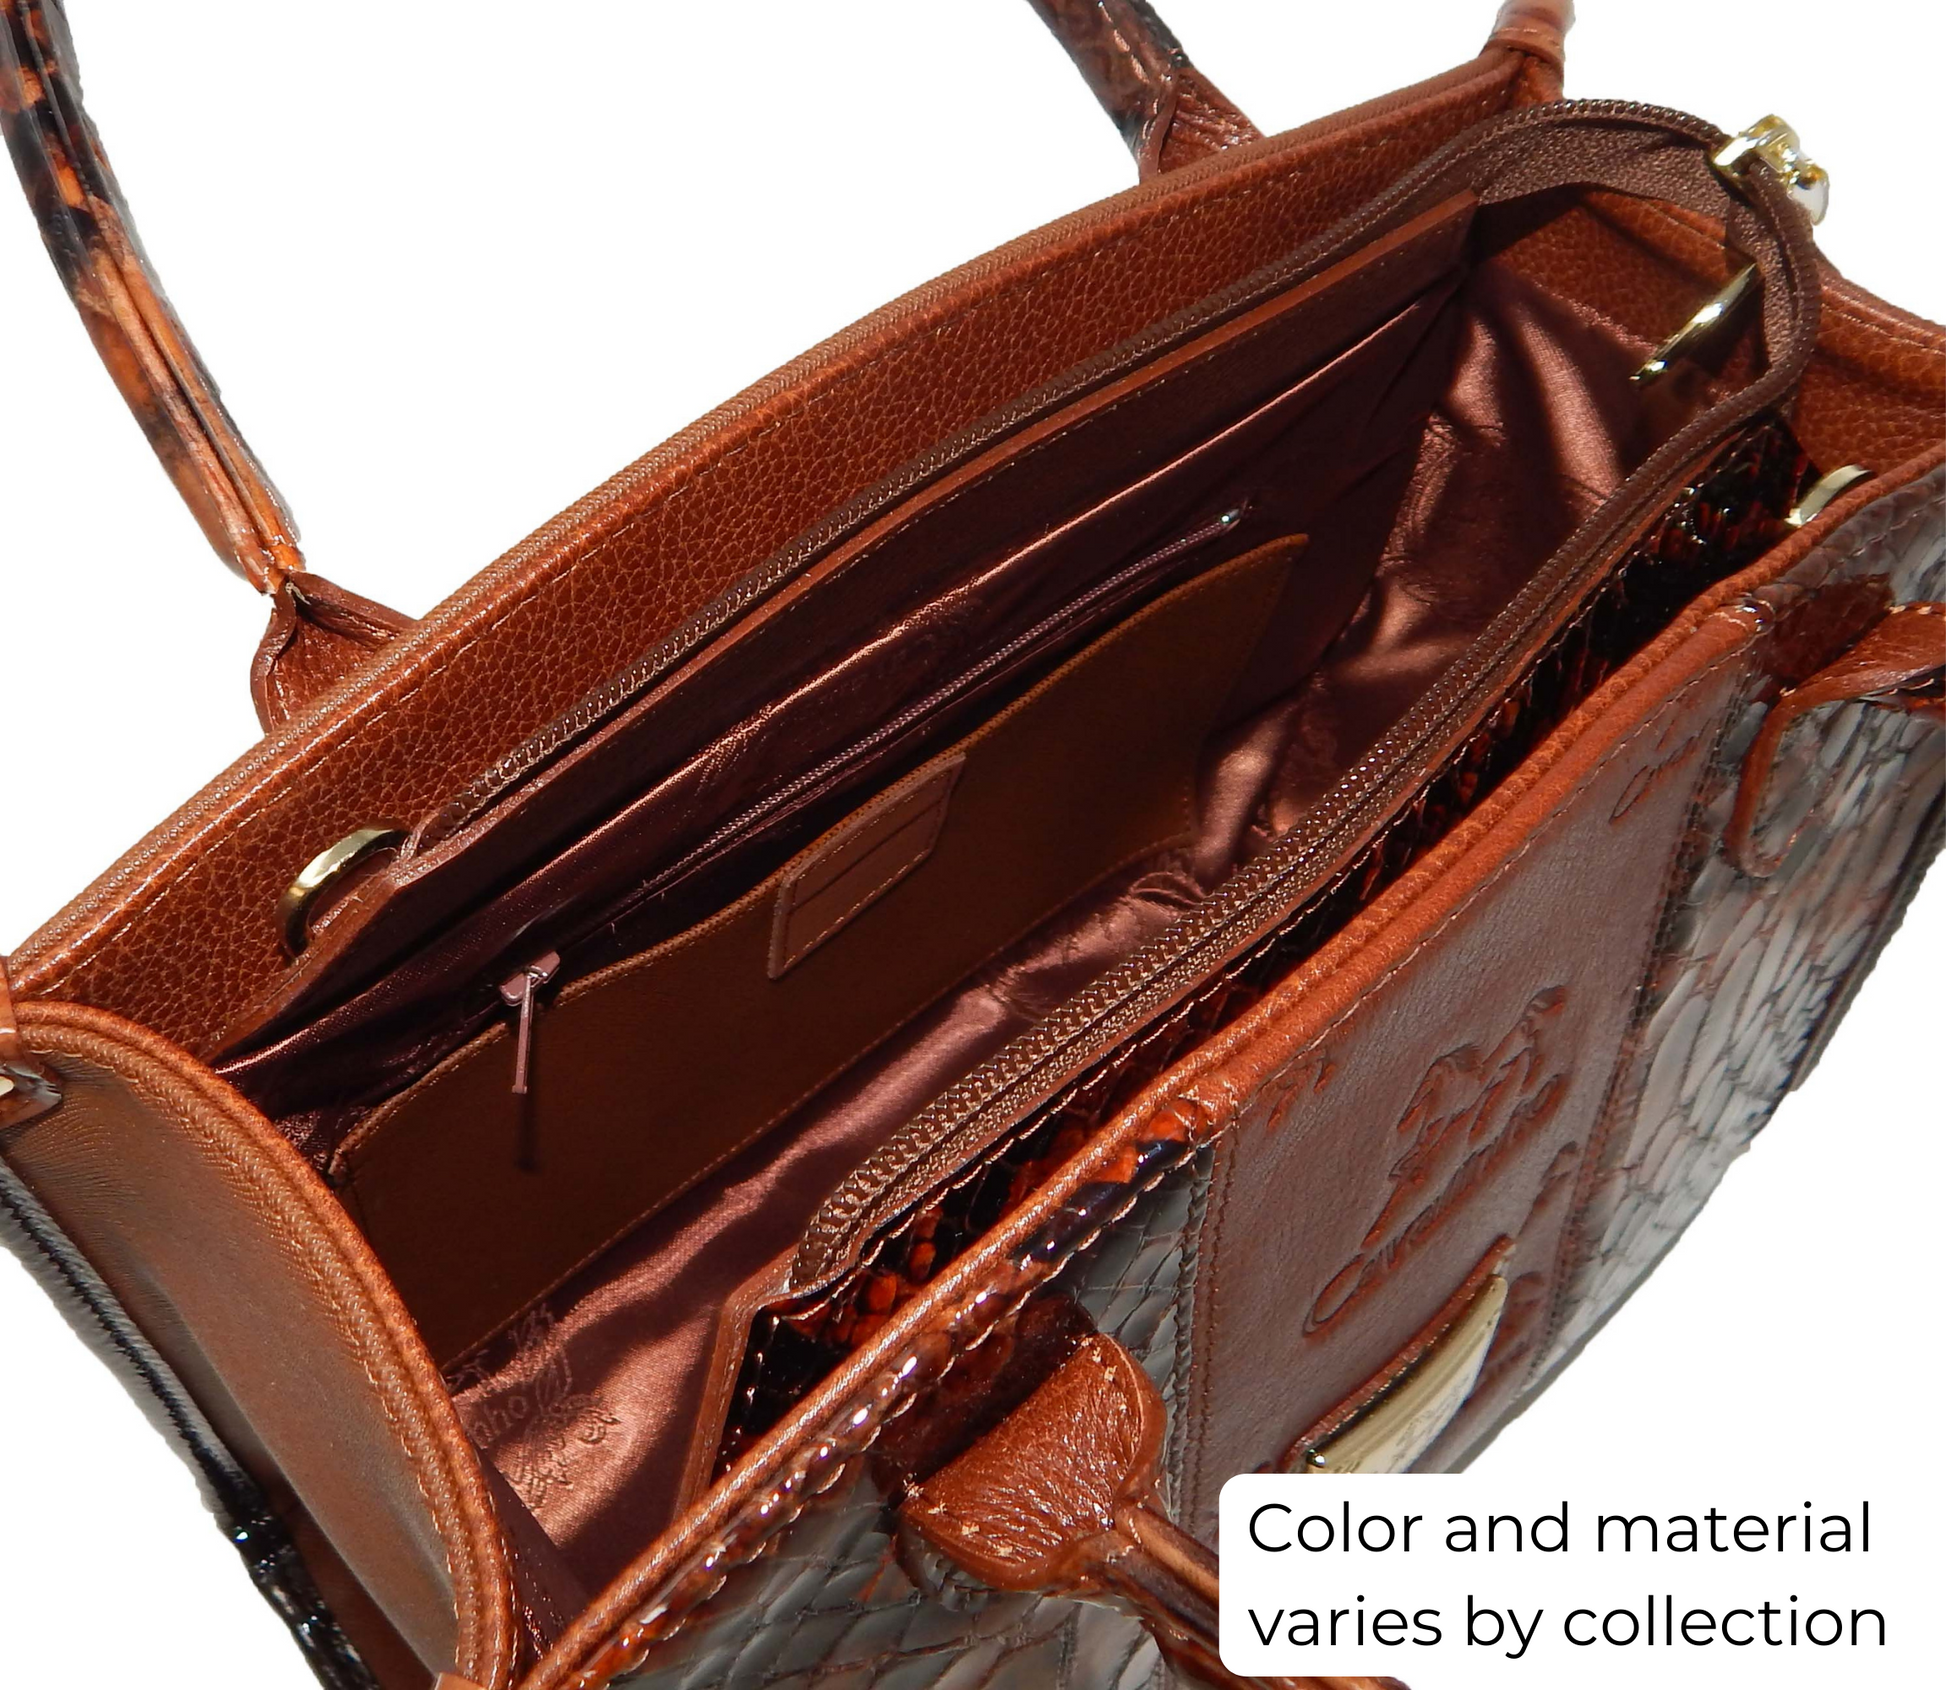 Cavalinho Royal Handbag - Black and White - inside_0480_ca11a8f0-8e3f-4599-832c-c9d5cea77de8